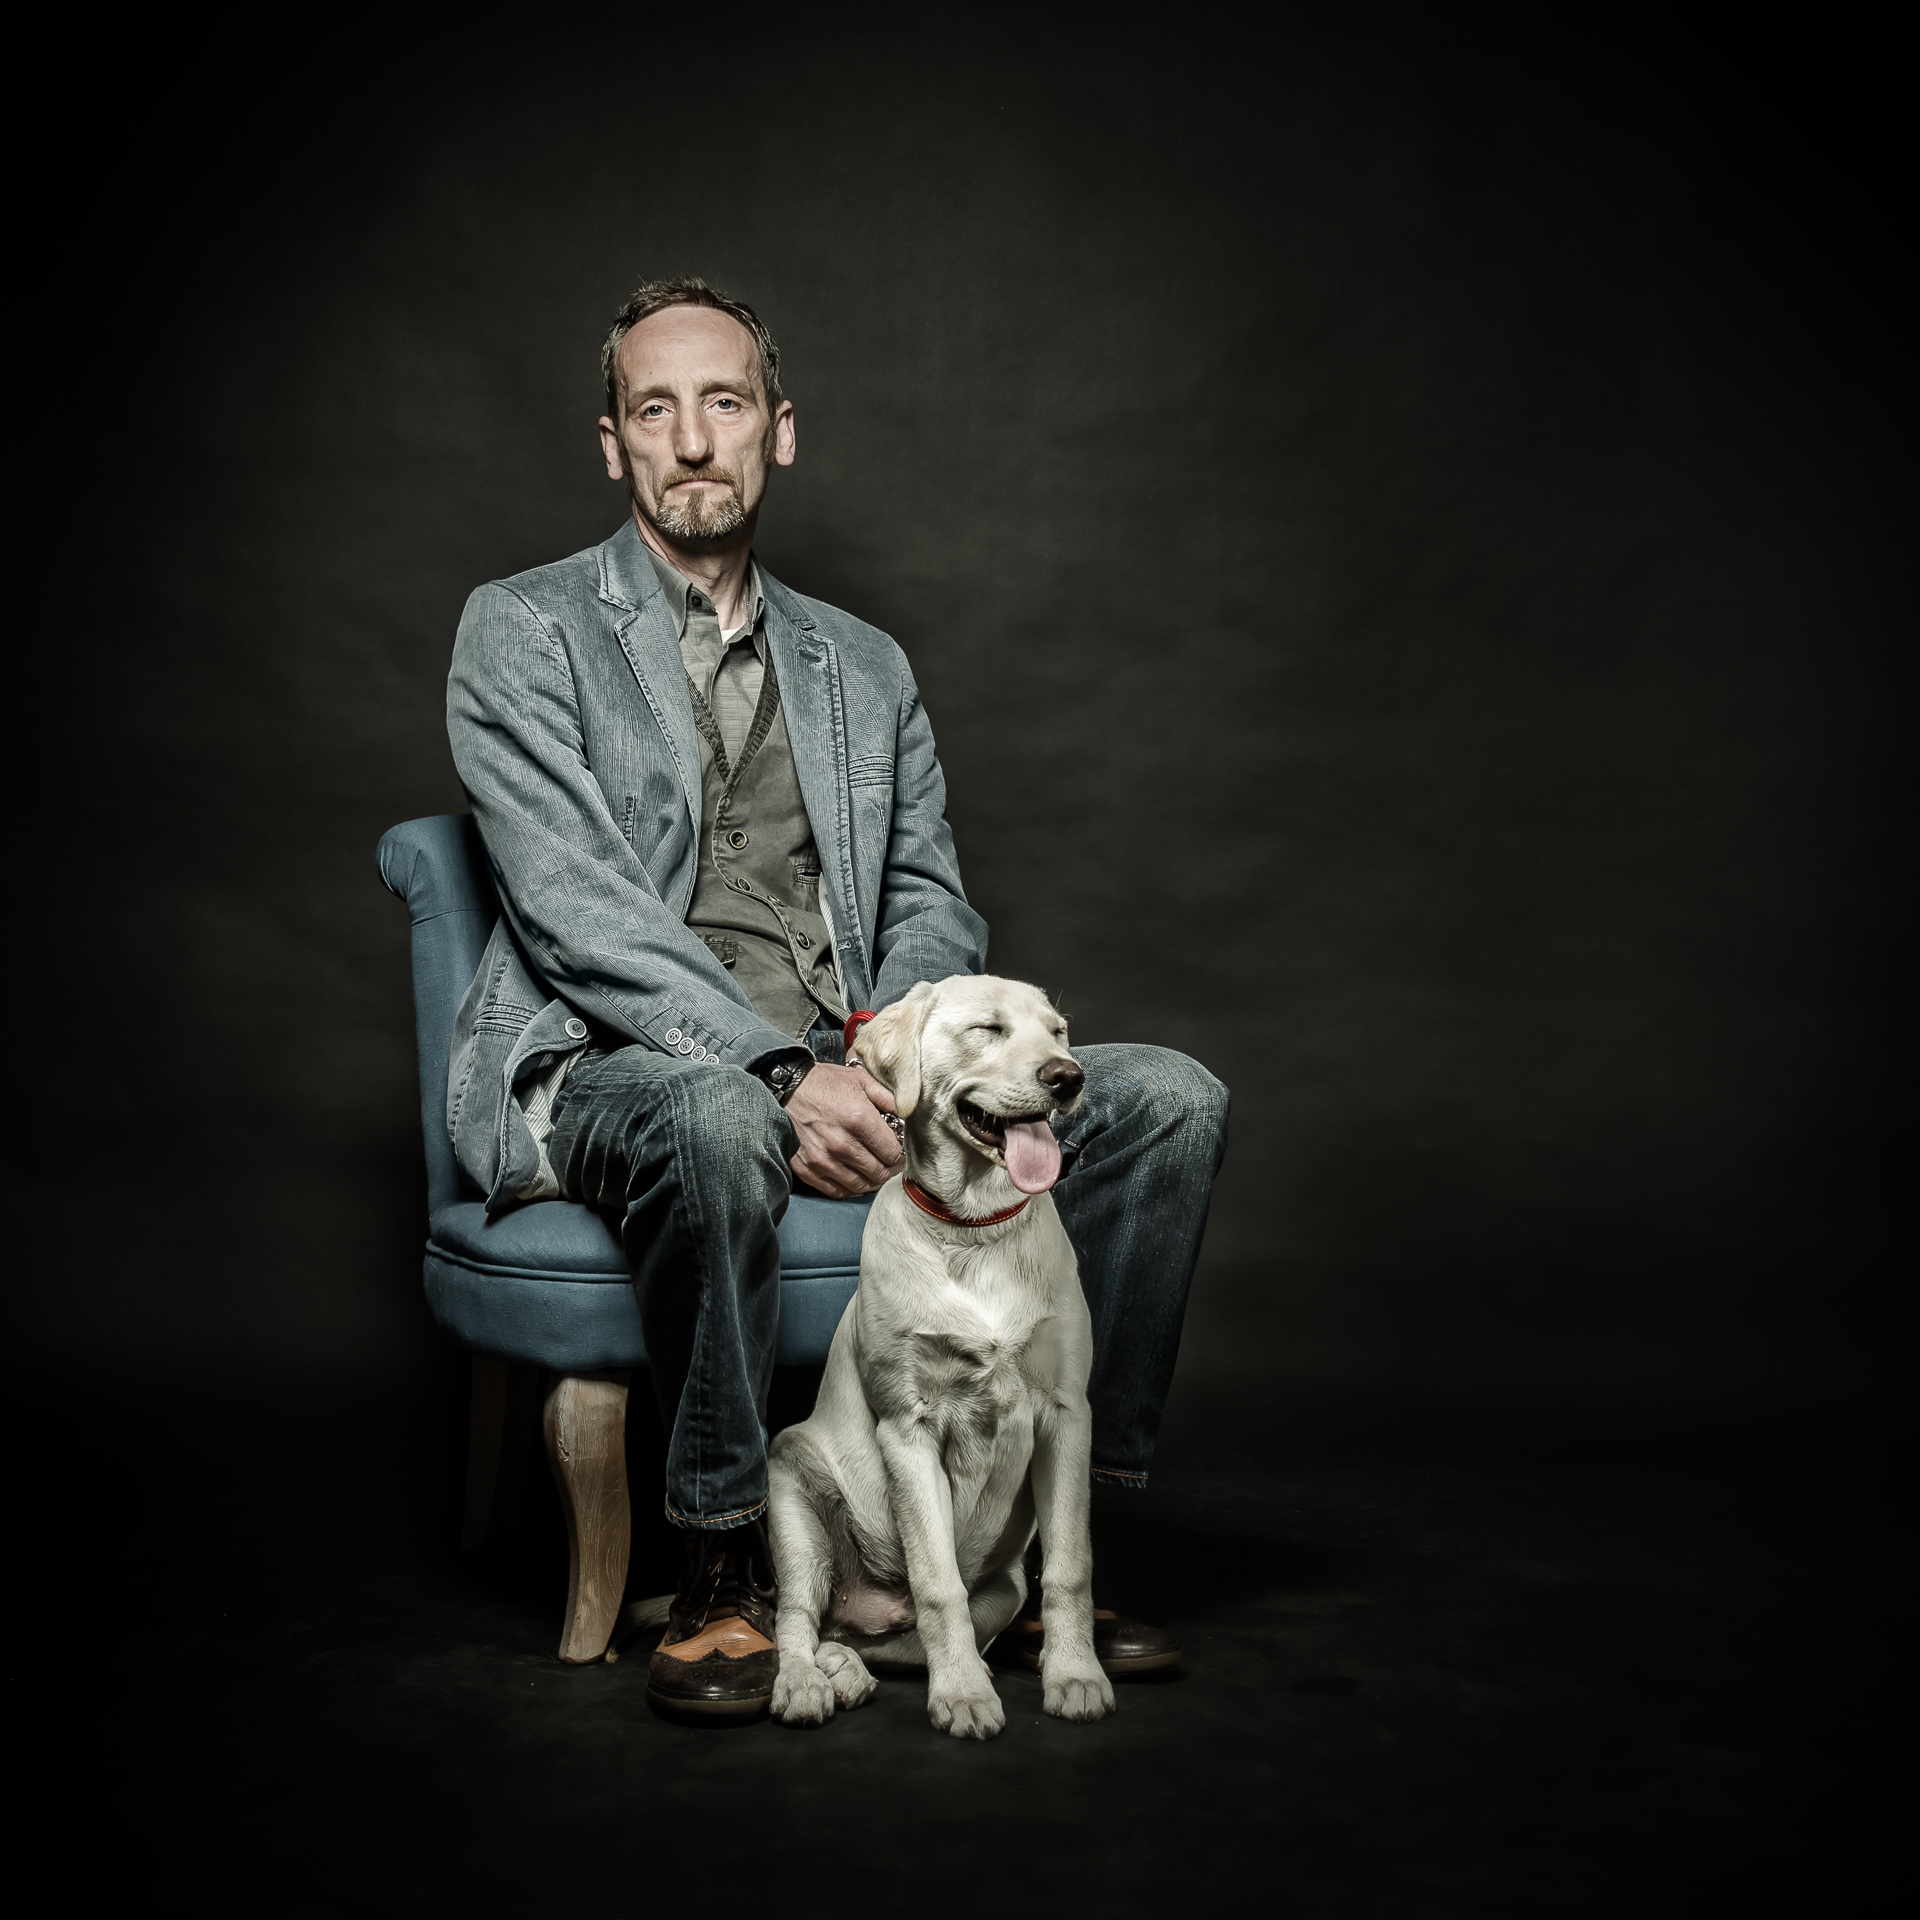 Photographie en studio fond noir de différents humains et de leur chien respectif par Quentin Pruvost